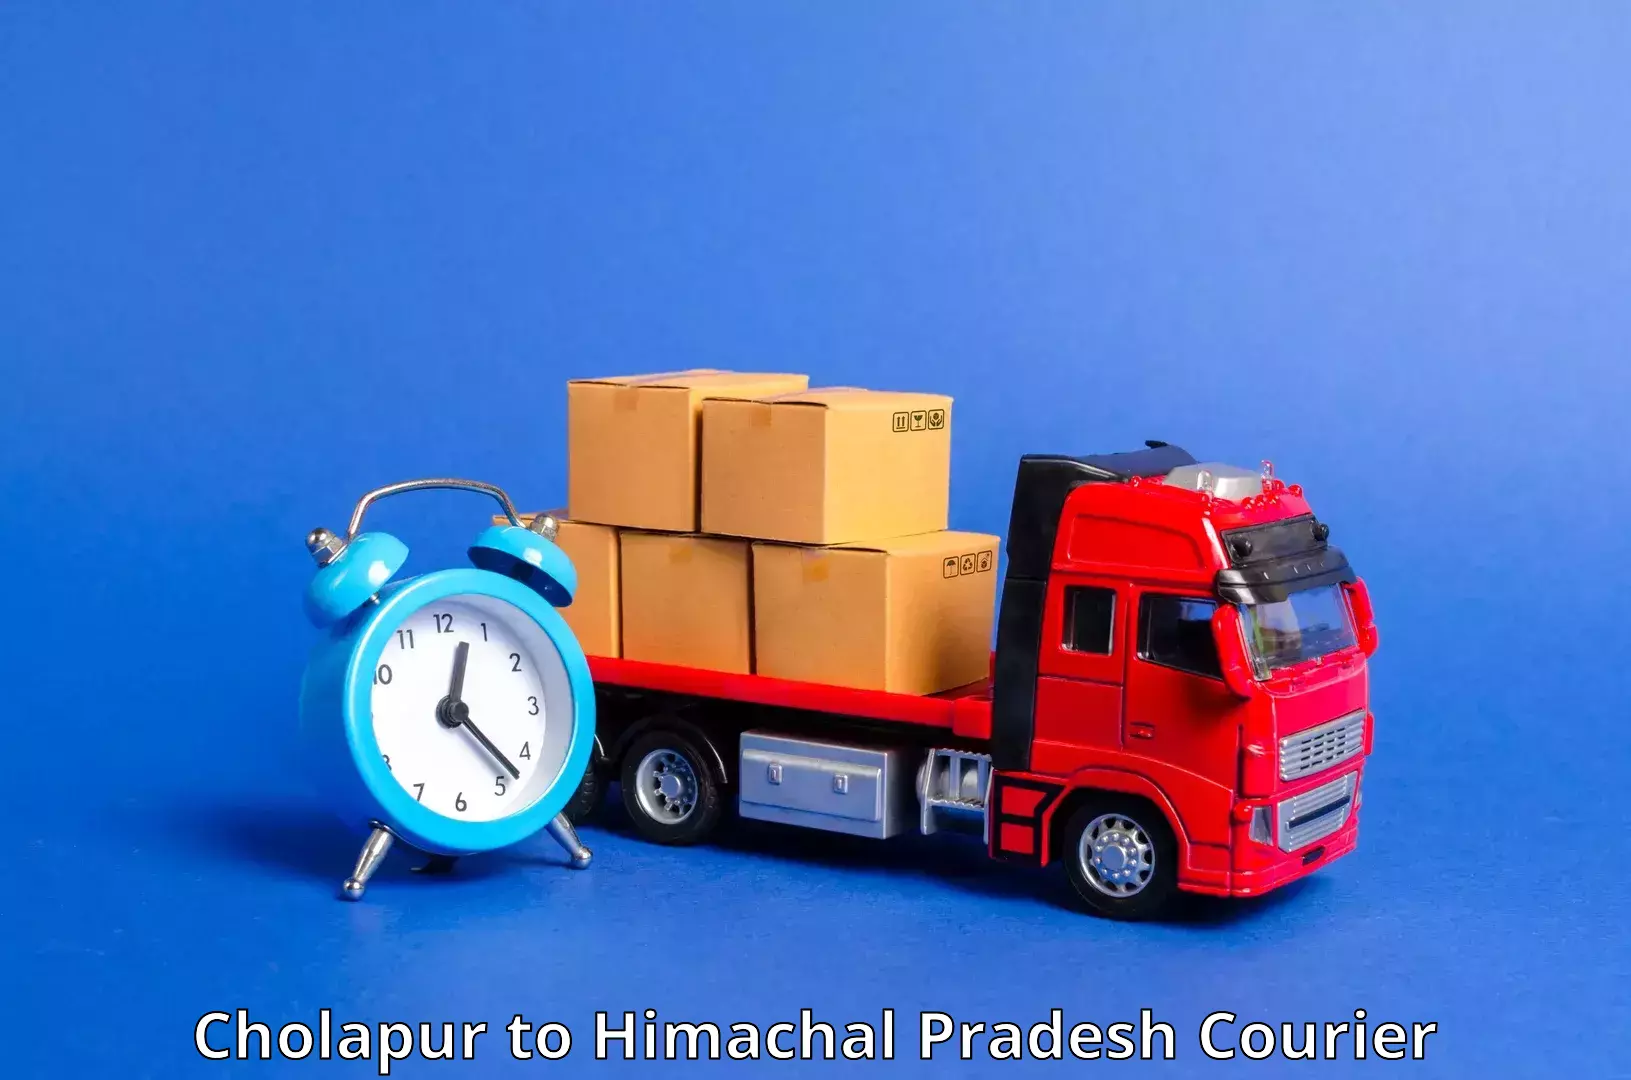 Express mail service Cholapur to Himachal Pradesh